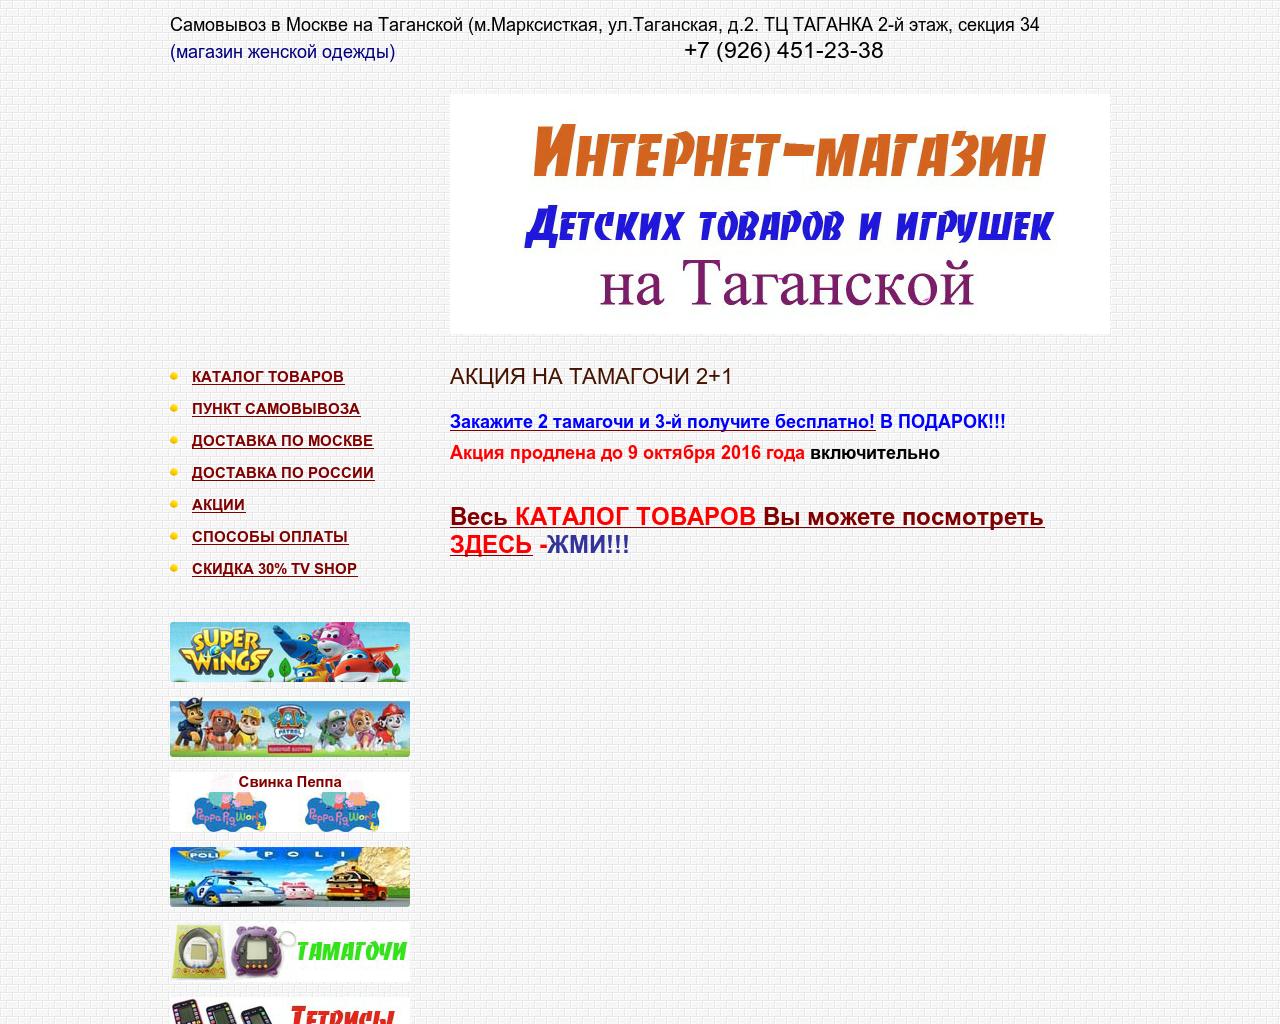 Изображение сайта mytoyshop.ru в разрешении 1280x1024